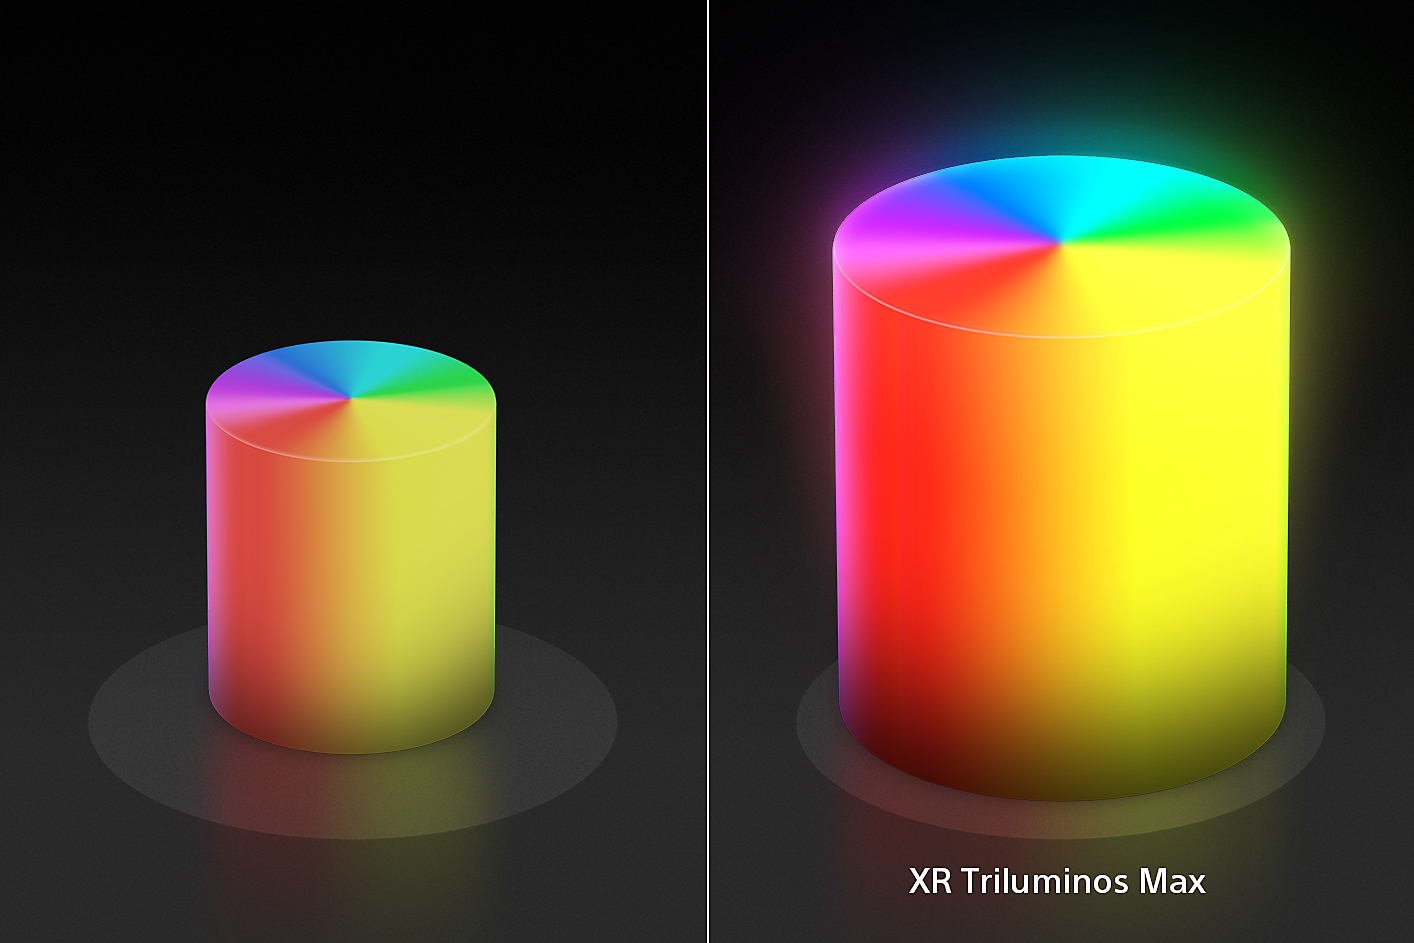 Podijeljeni zaslon pokazuje dva stošca boje u obliku svijeća, manji s lijeve, odnosno veći s desne strane, s naprednim bojama i teksturama tehnologije XR Triluminos Max